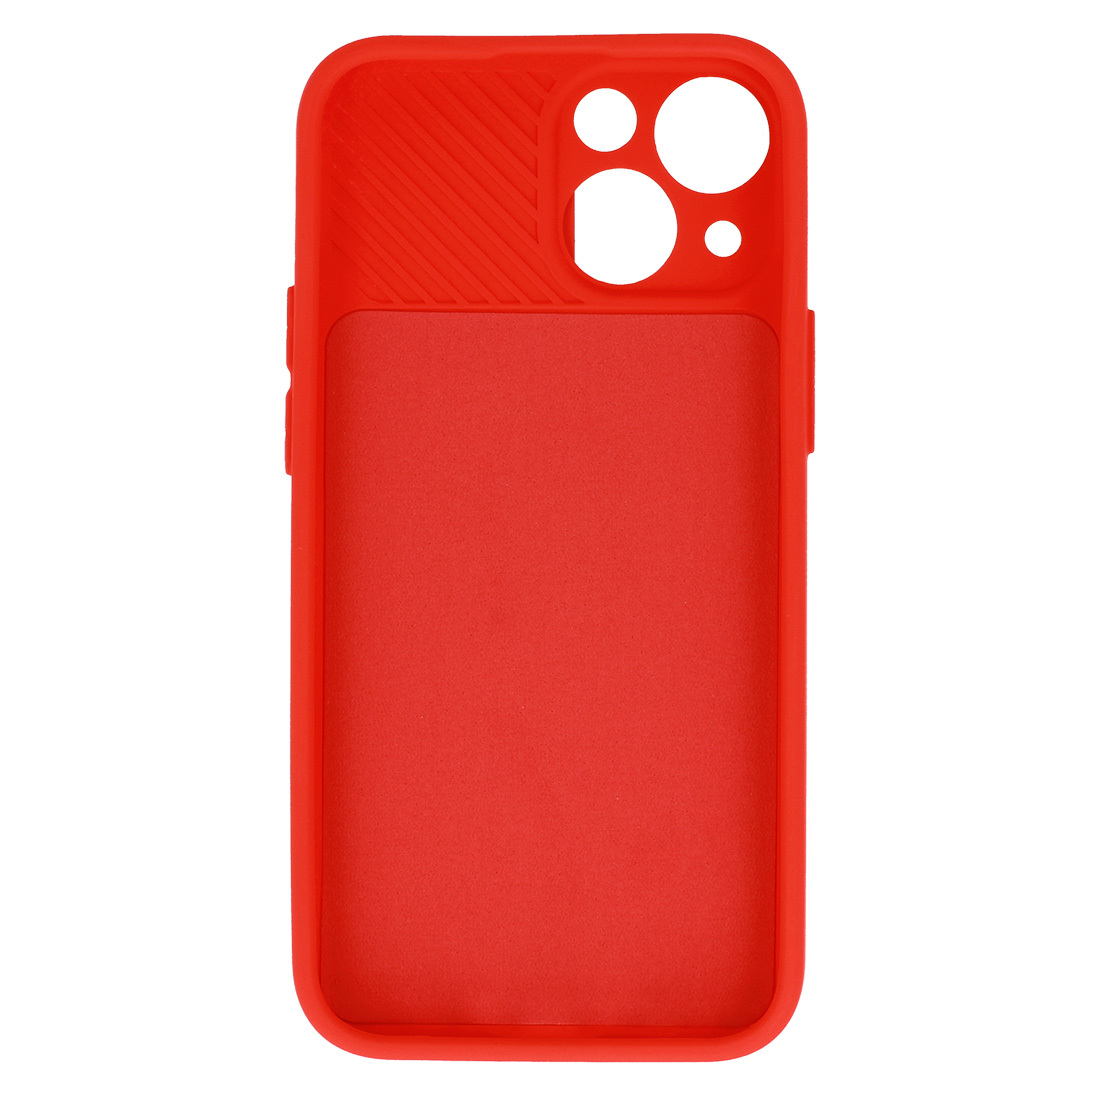 Pokrowiec etui z elastycznego TPU Camshield Soft Case czerwone APPLE iPhone SE 2020 / 5